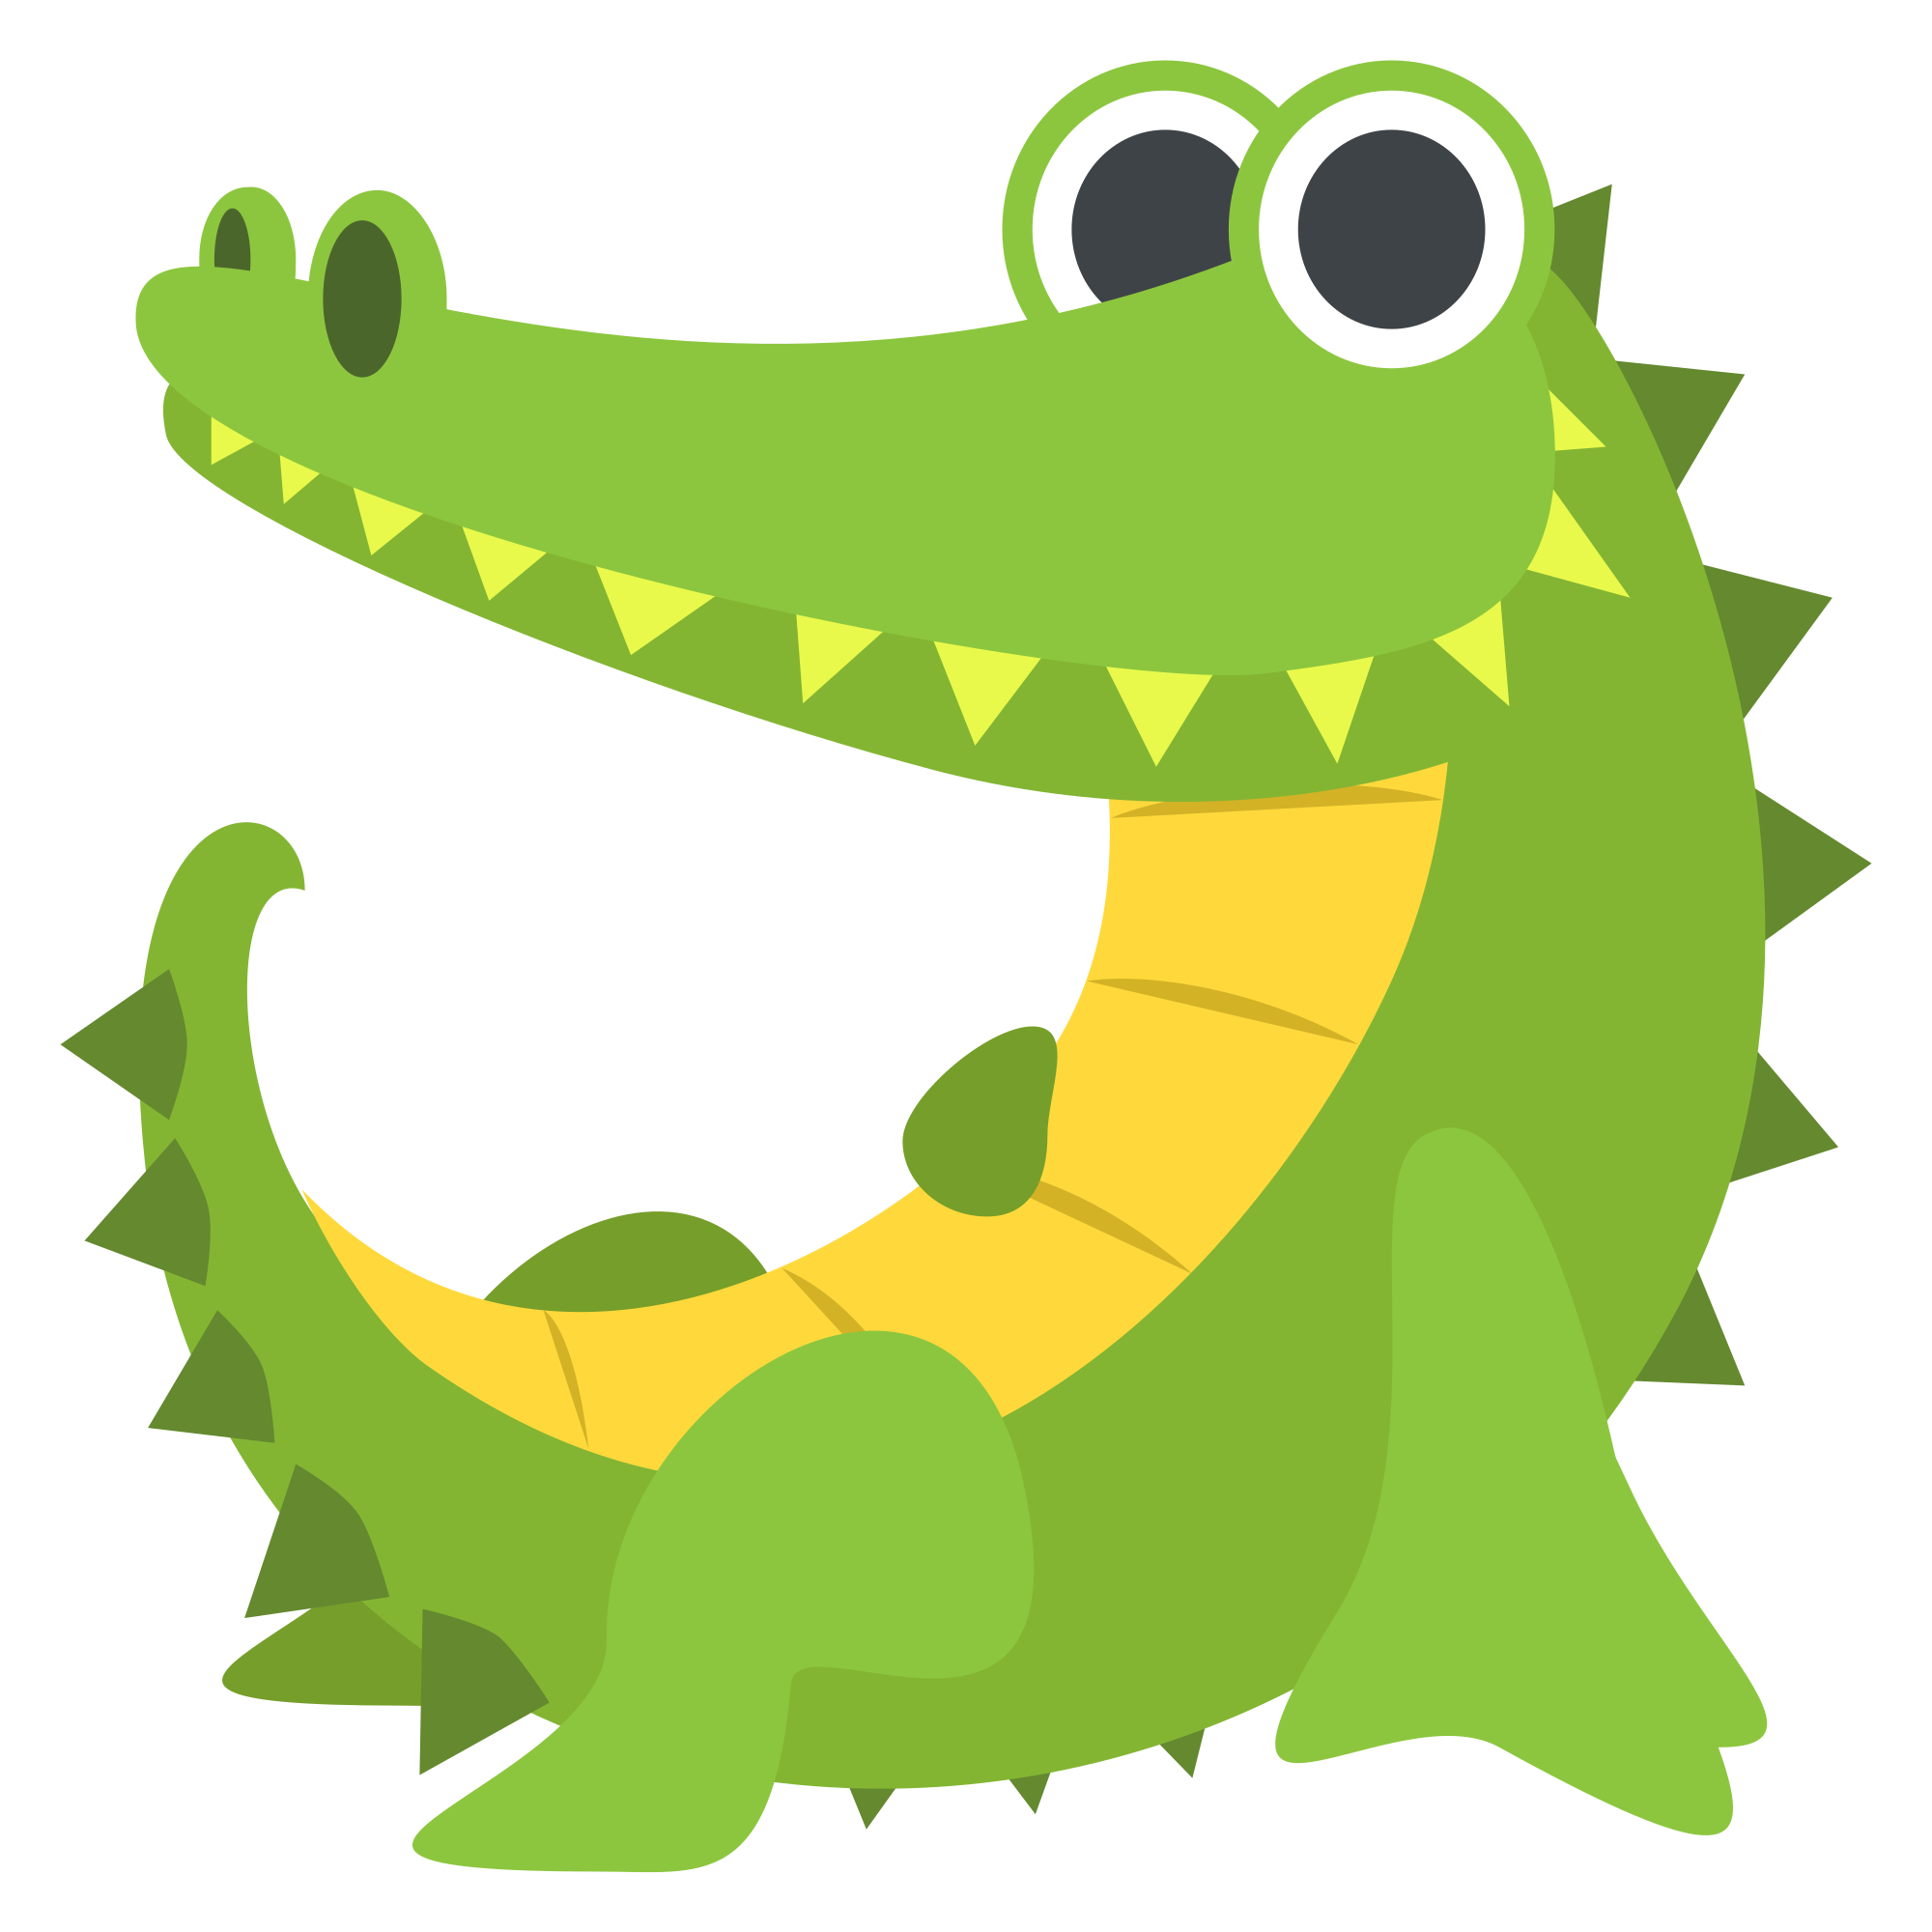 alligator clip art